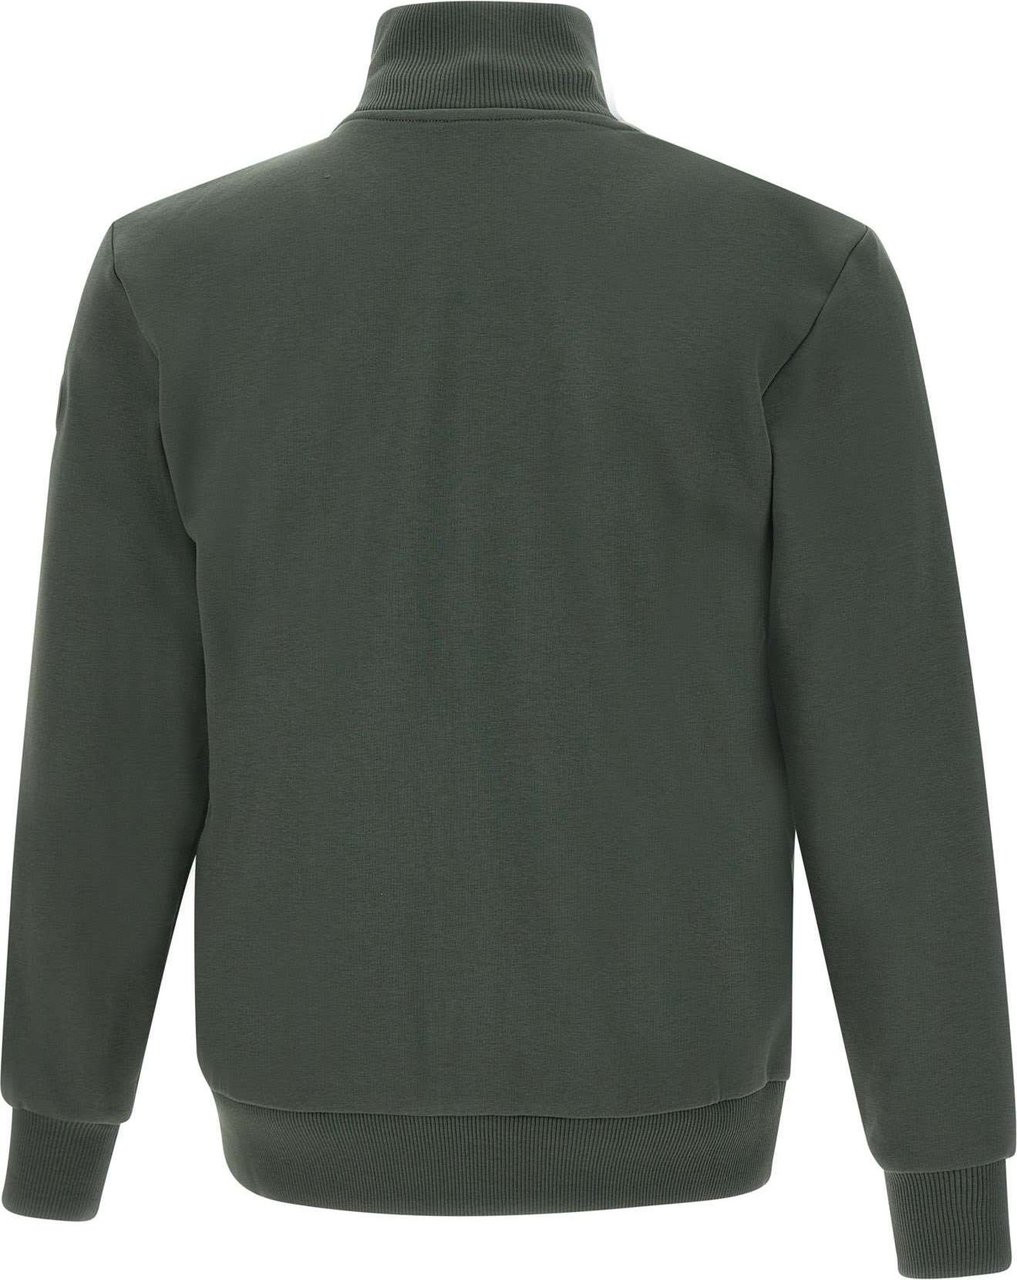 Colmar Originals Sweaters Green Groen